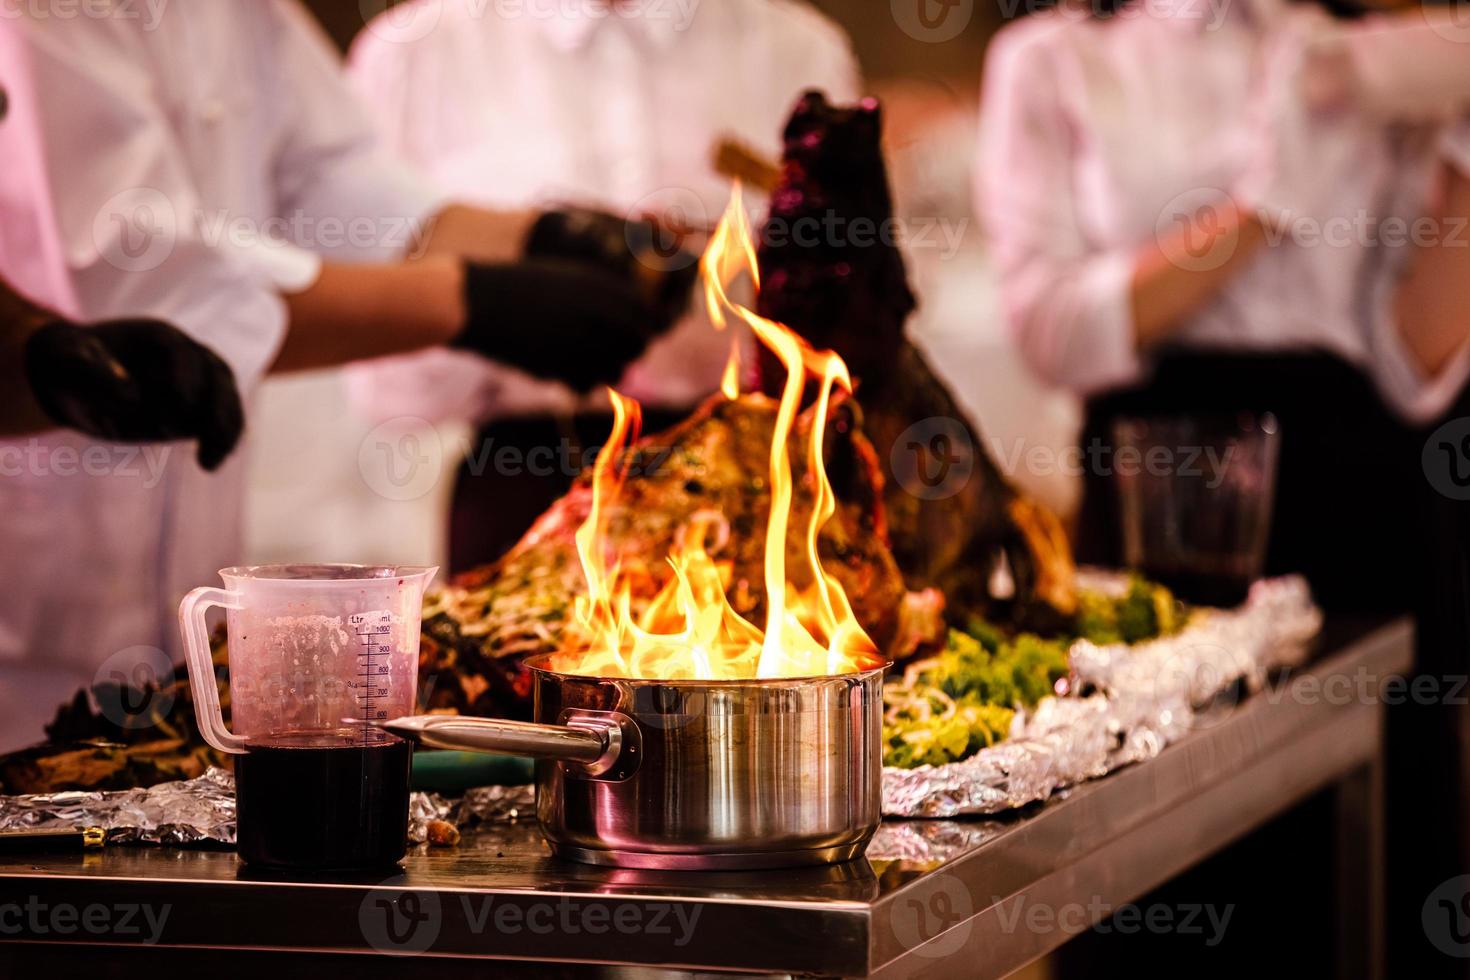 cooking show, il cuoco prepara il cibo in una padella con fuoco. lo chef prepara il cibo con spettacolo di fuoco nel ristorante. messa a fuoco selettiva foto